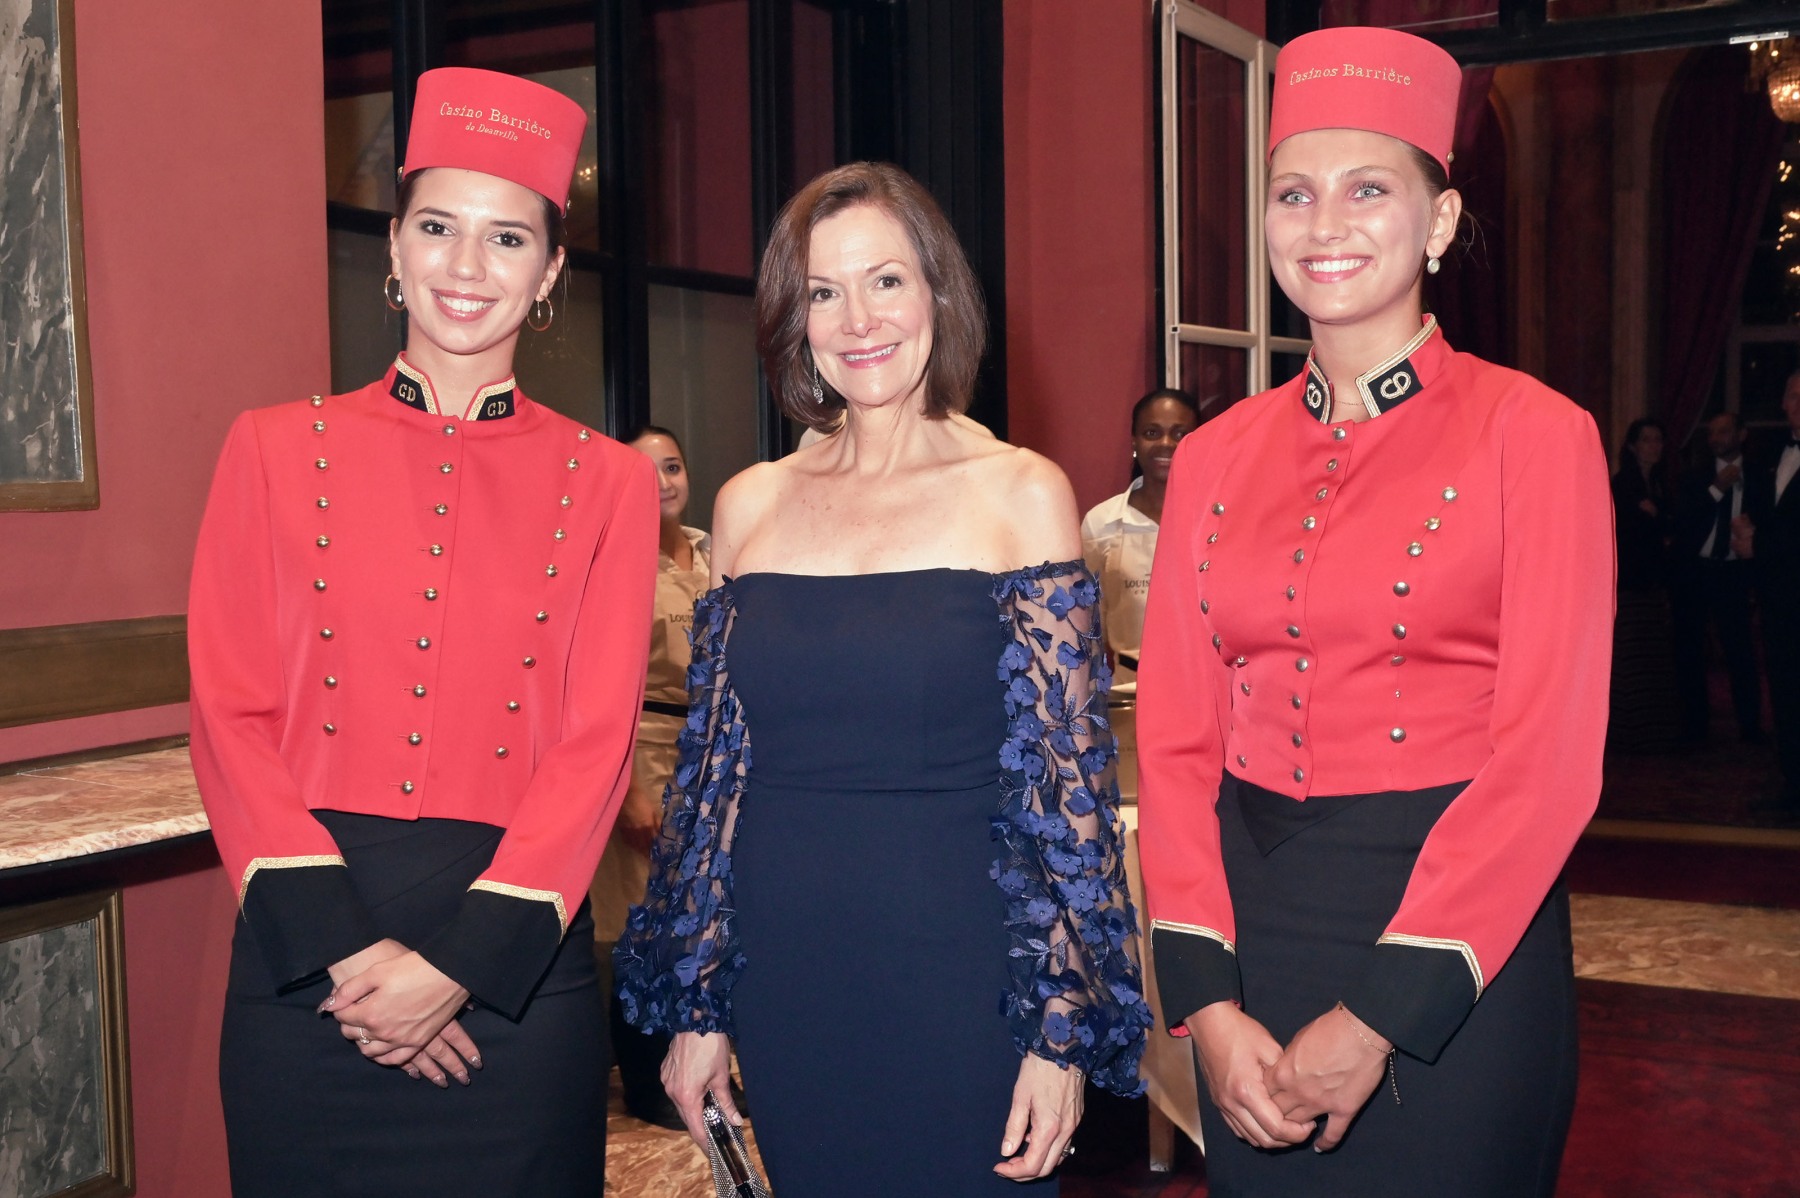 Mme l'ambassadrice des states Denise Campbell Bauer plutot  cool a posé entre des "Spiroutes"  ces groomettes en tuniques rouges